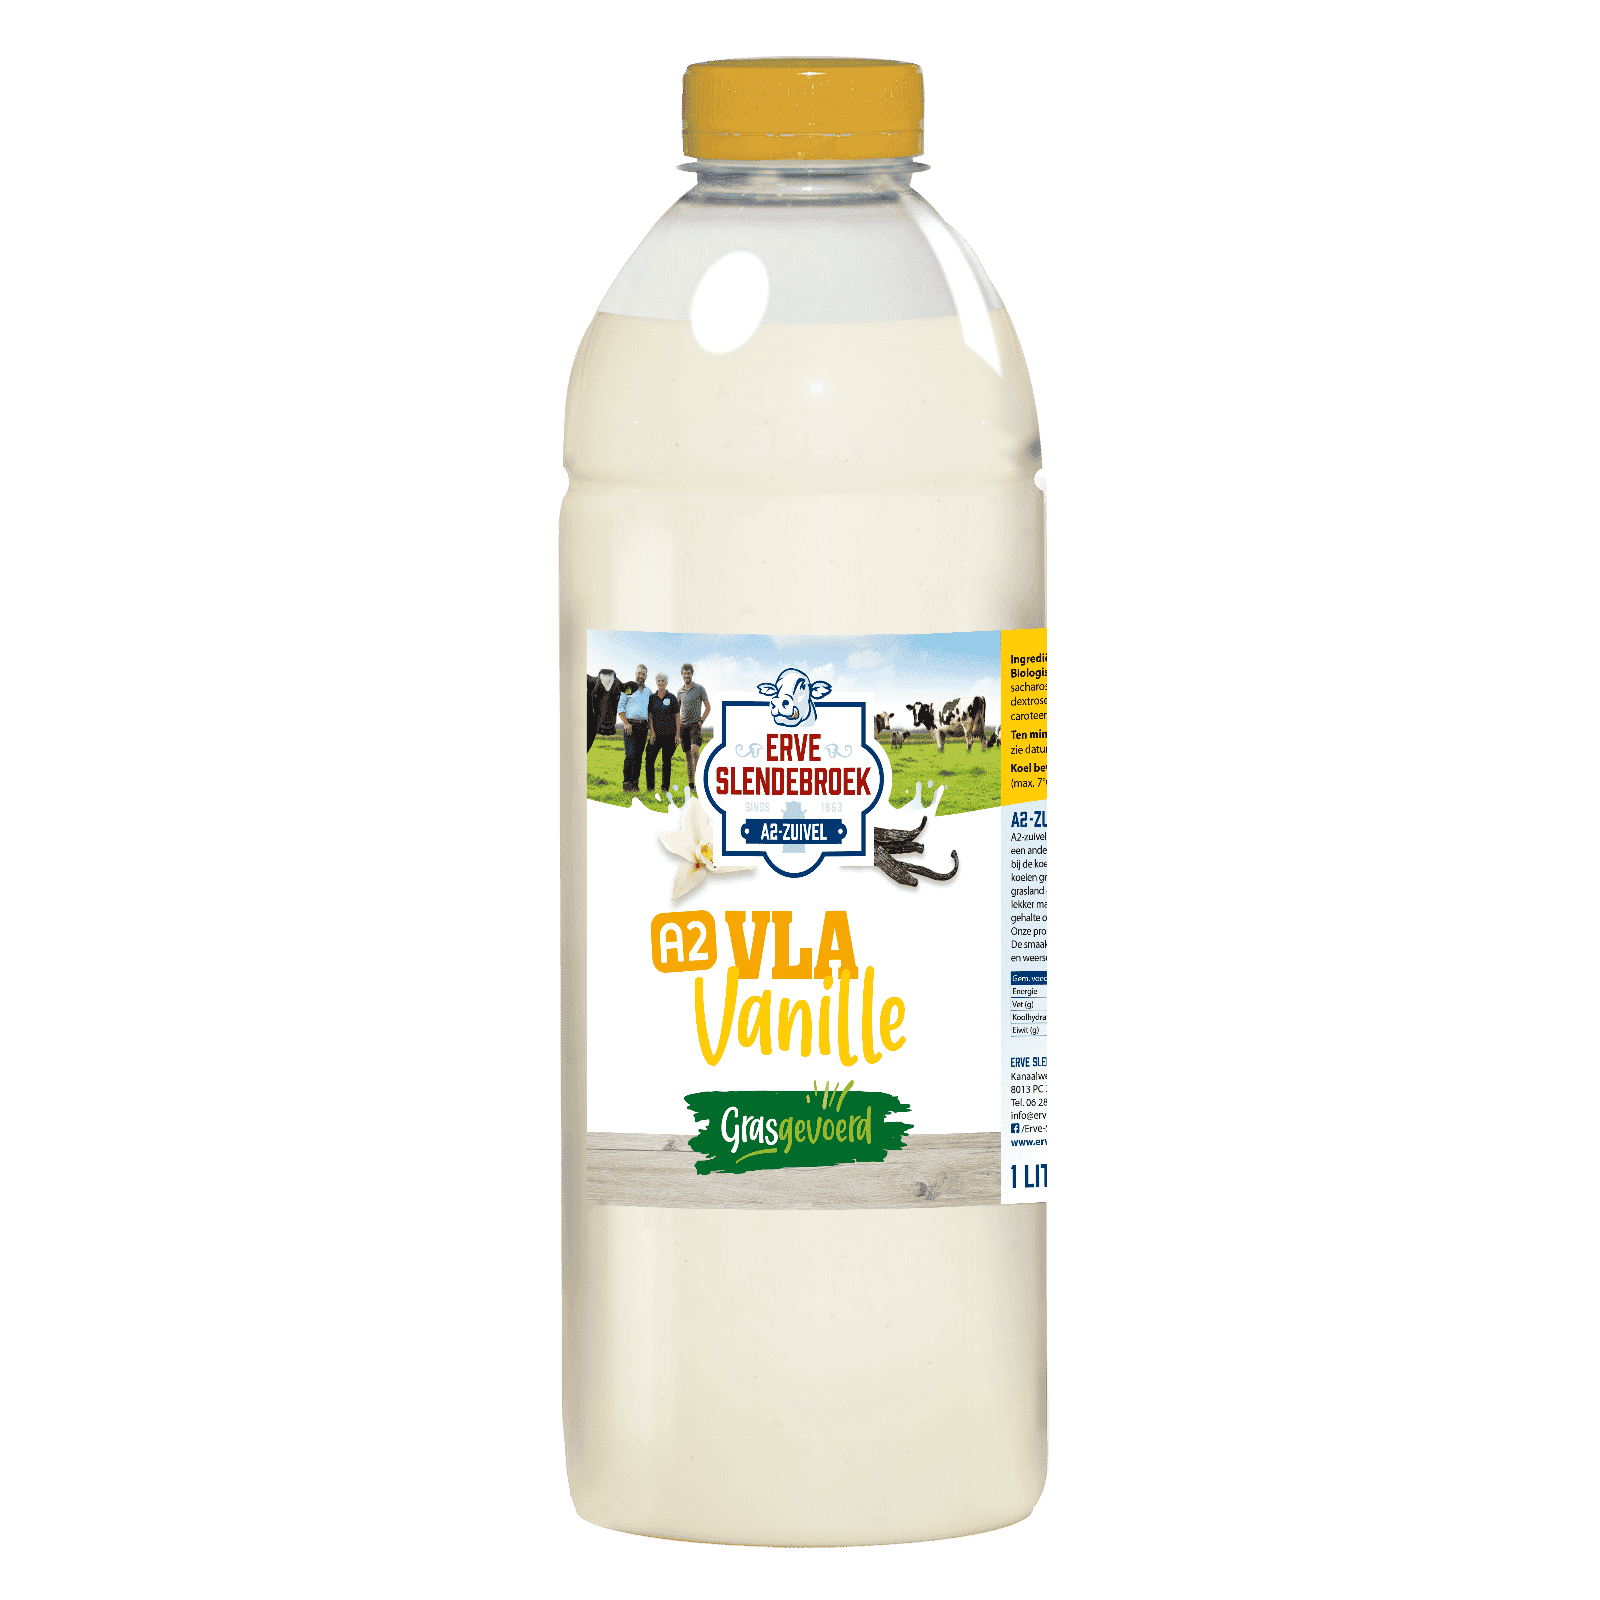 Vla van grasgevoerde melk